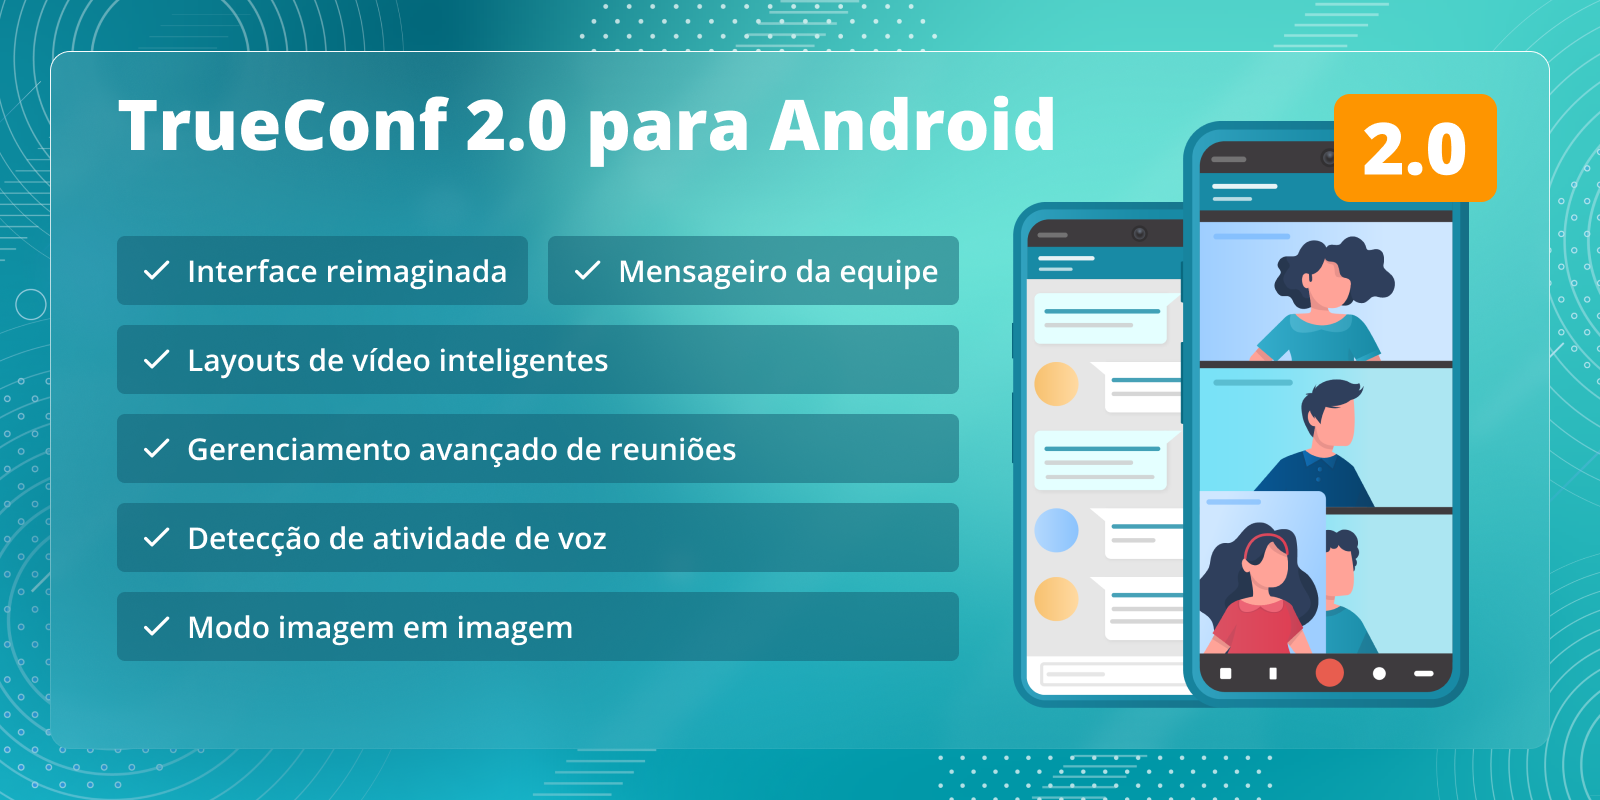 TrueConf 2.0 para Android: o aplicativo completo de videoconferência e mensagens de equipe 6